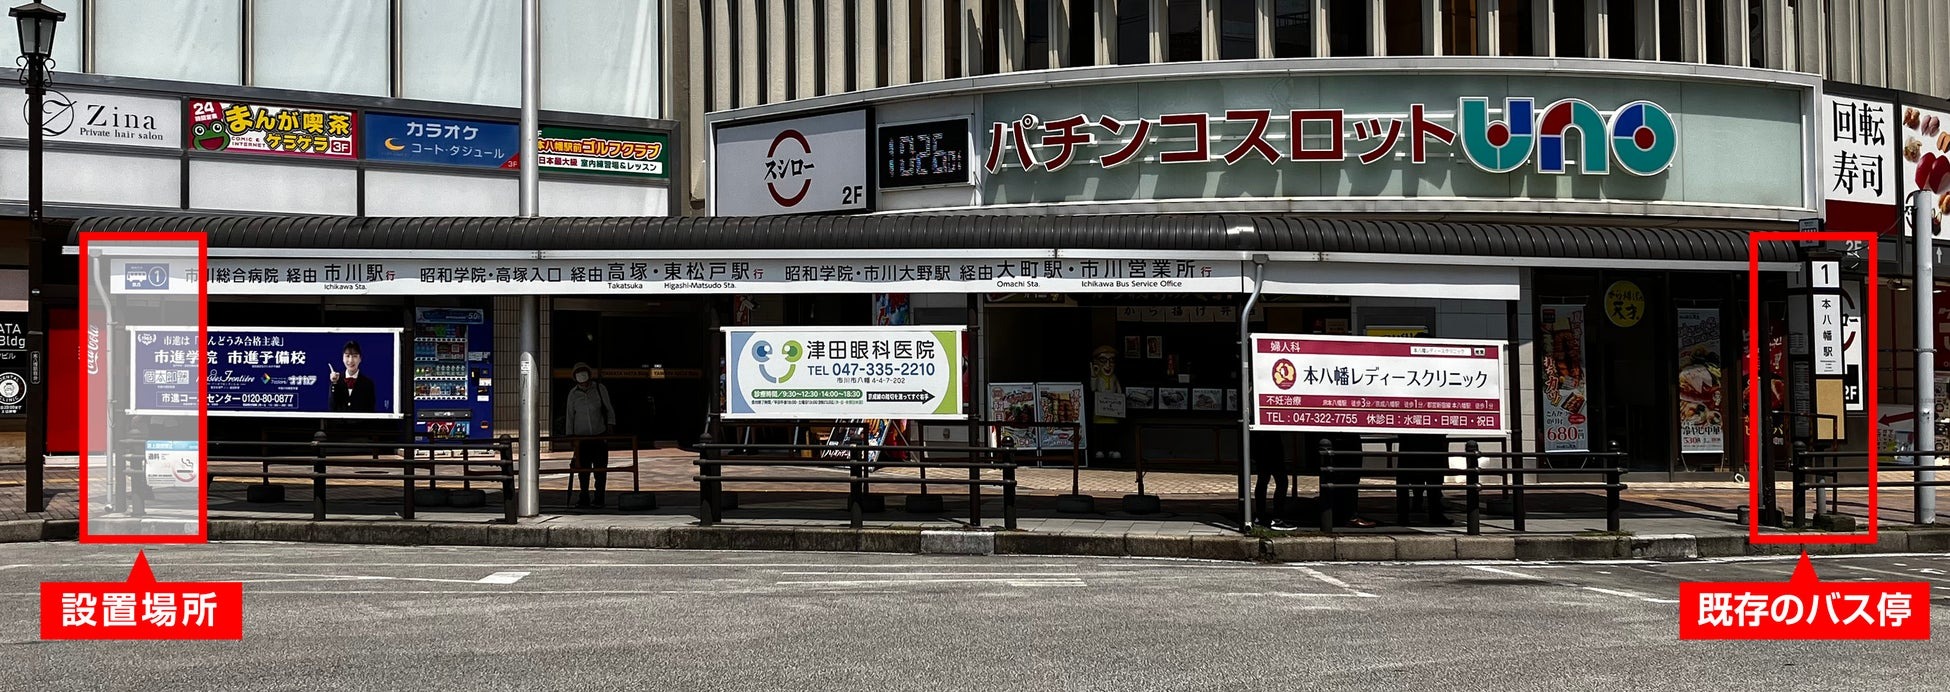 京成バス本八幡駅にてデジタルサイネージ時刻表「スマートバス停」の実証実験